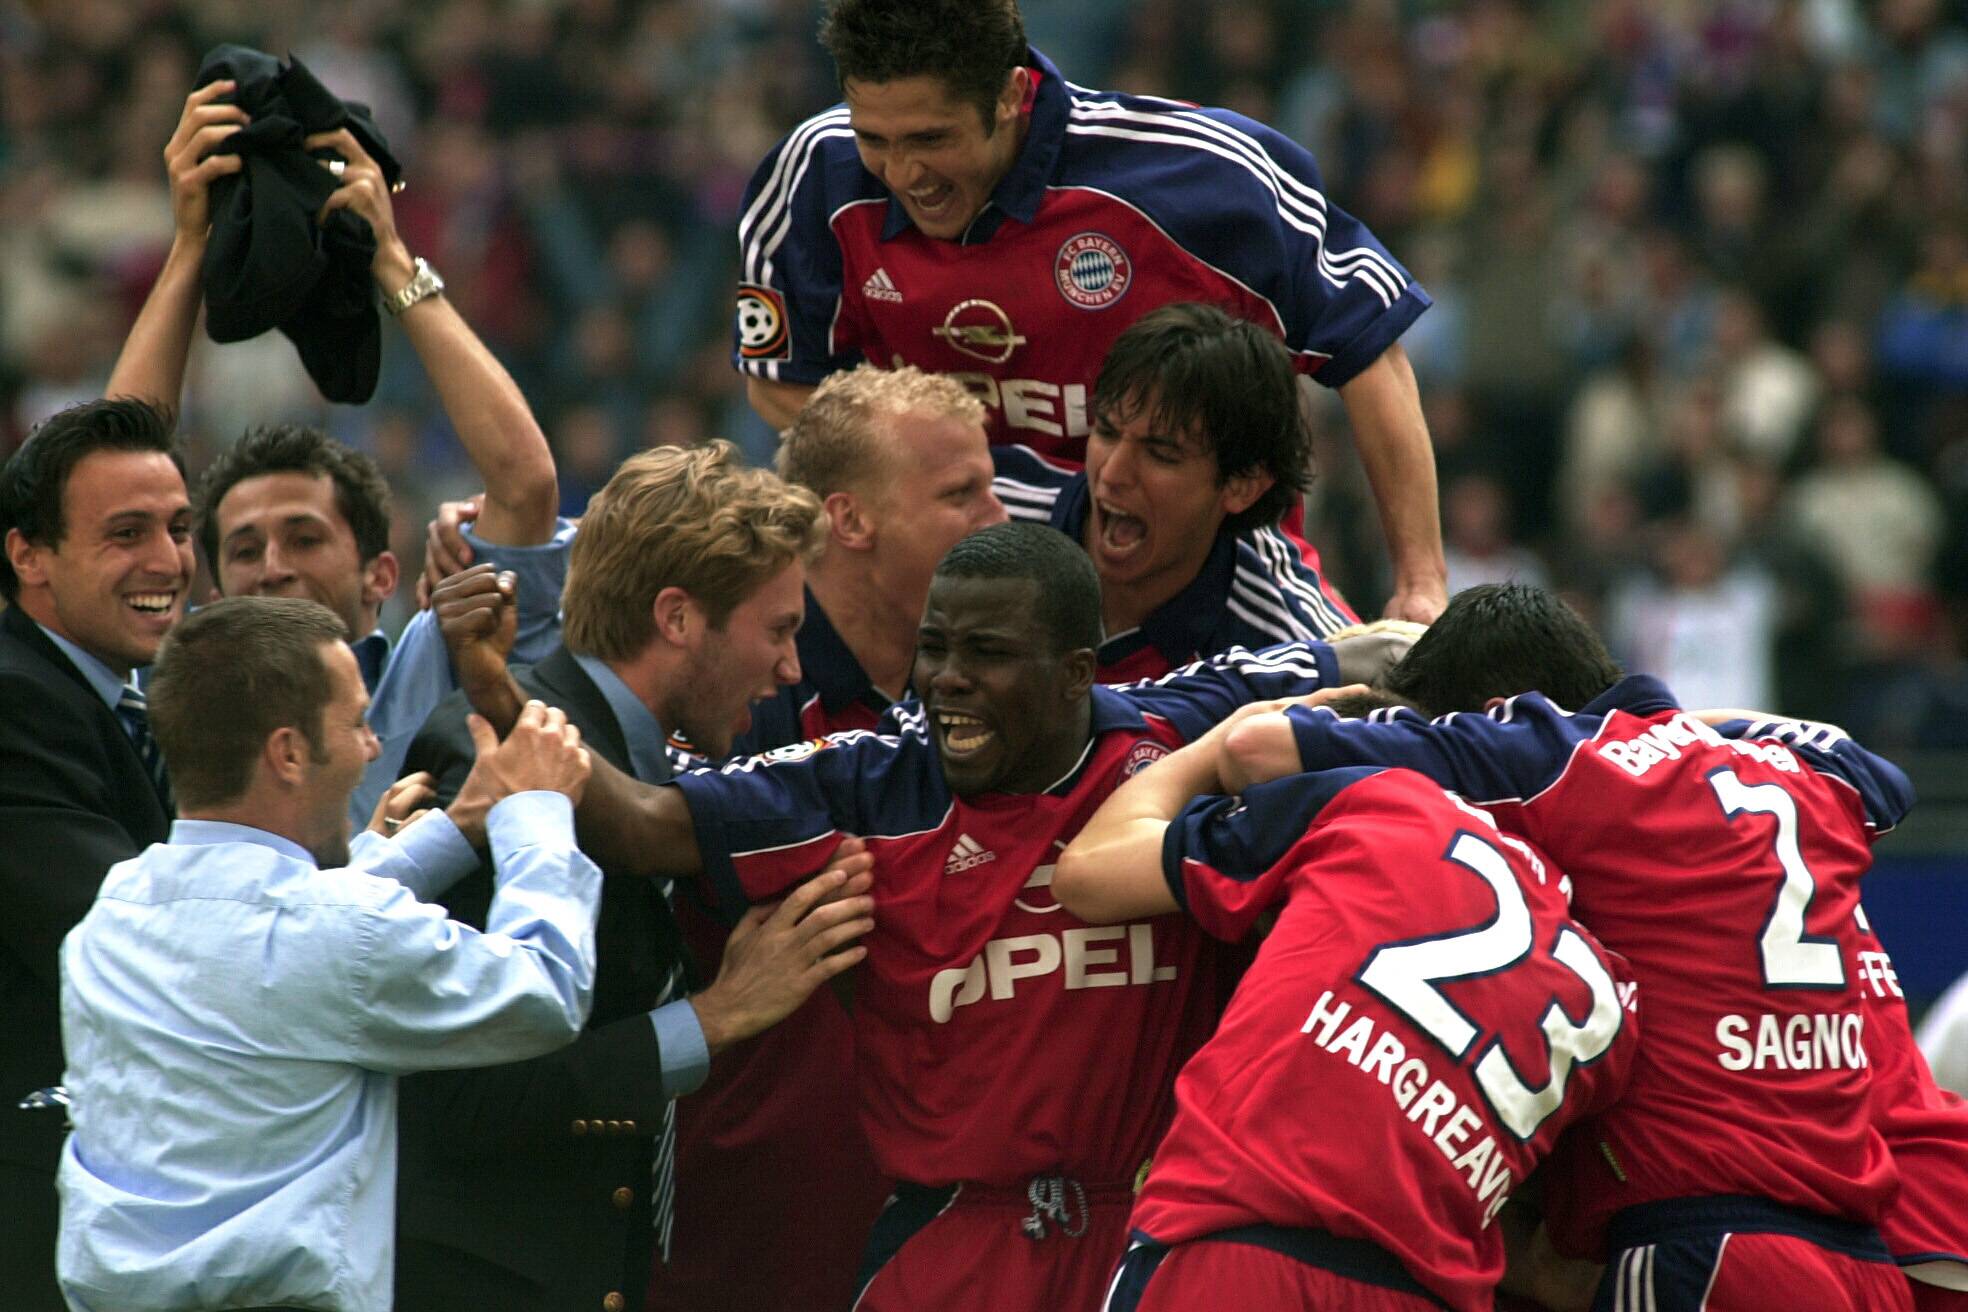 Weißt du noch…? | Saisonfinale 2001: Drama zwischen Bayern und Schalke